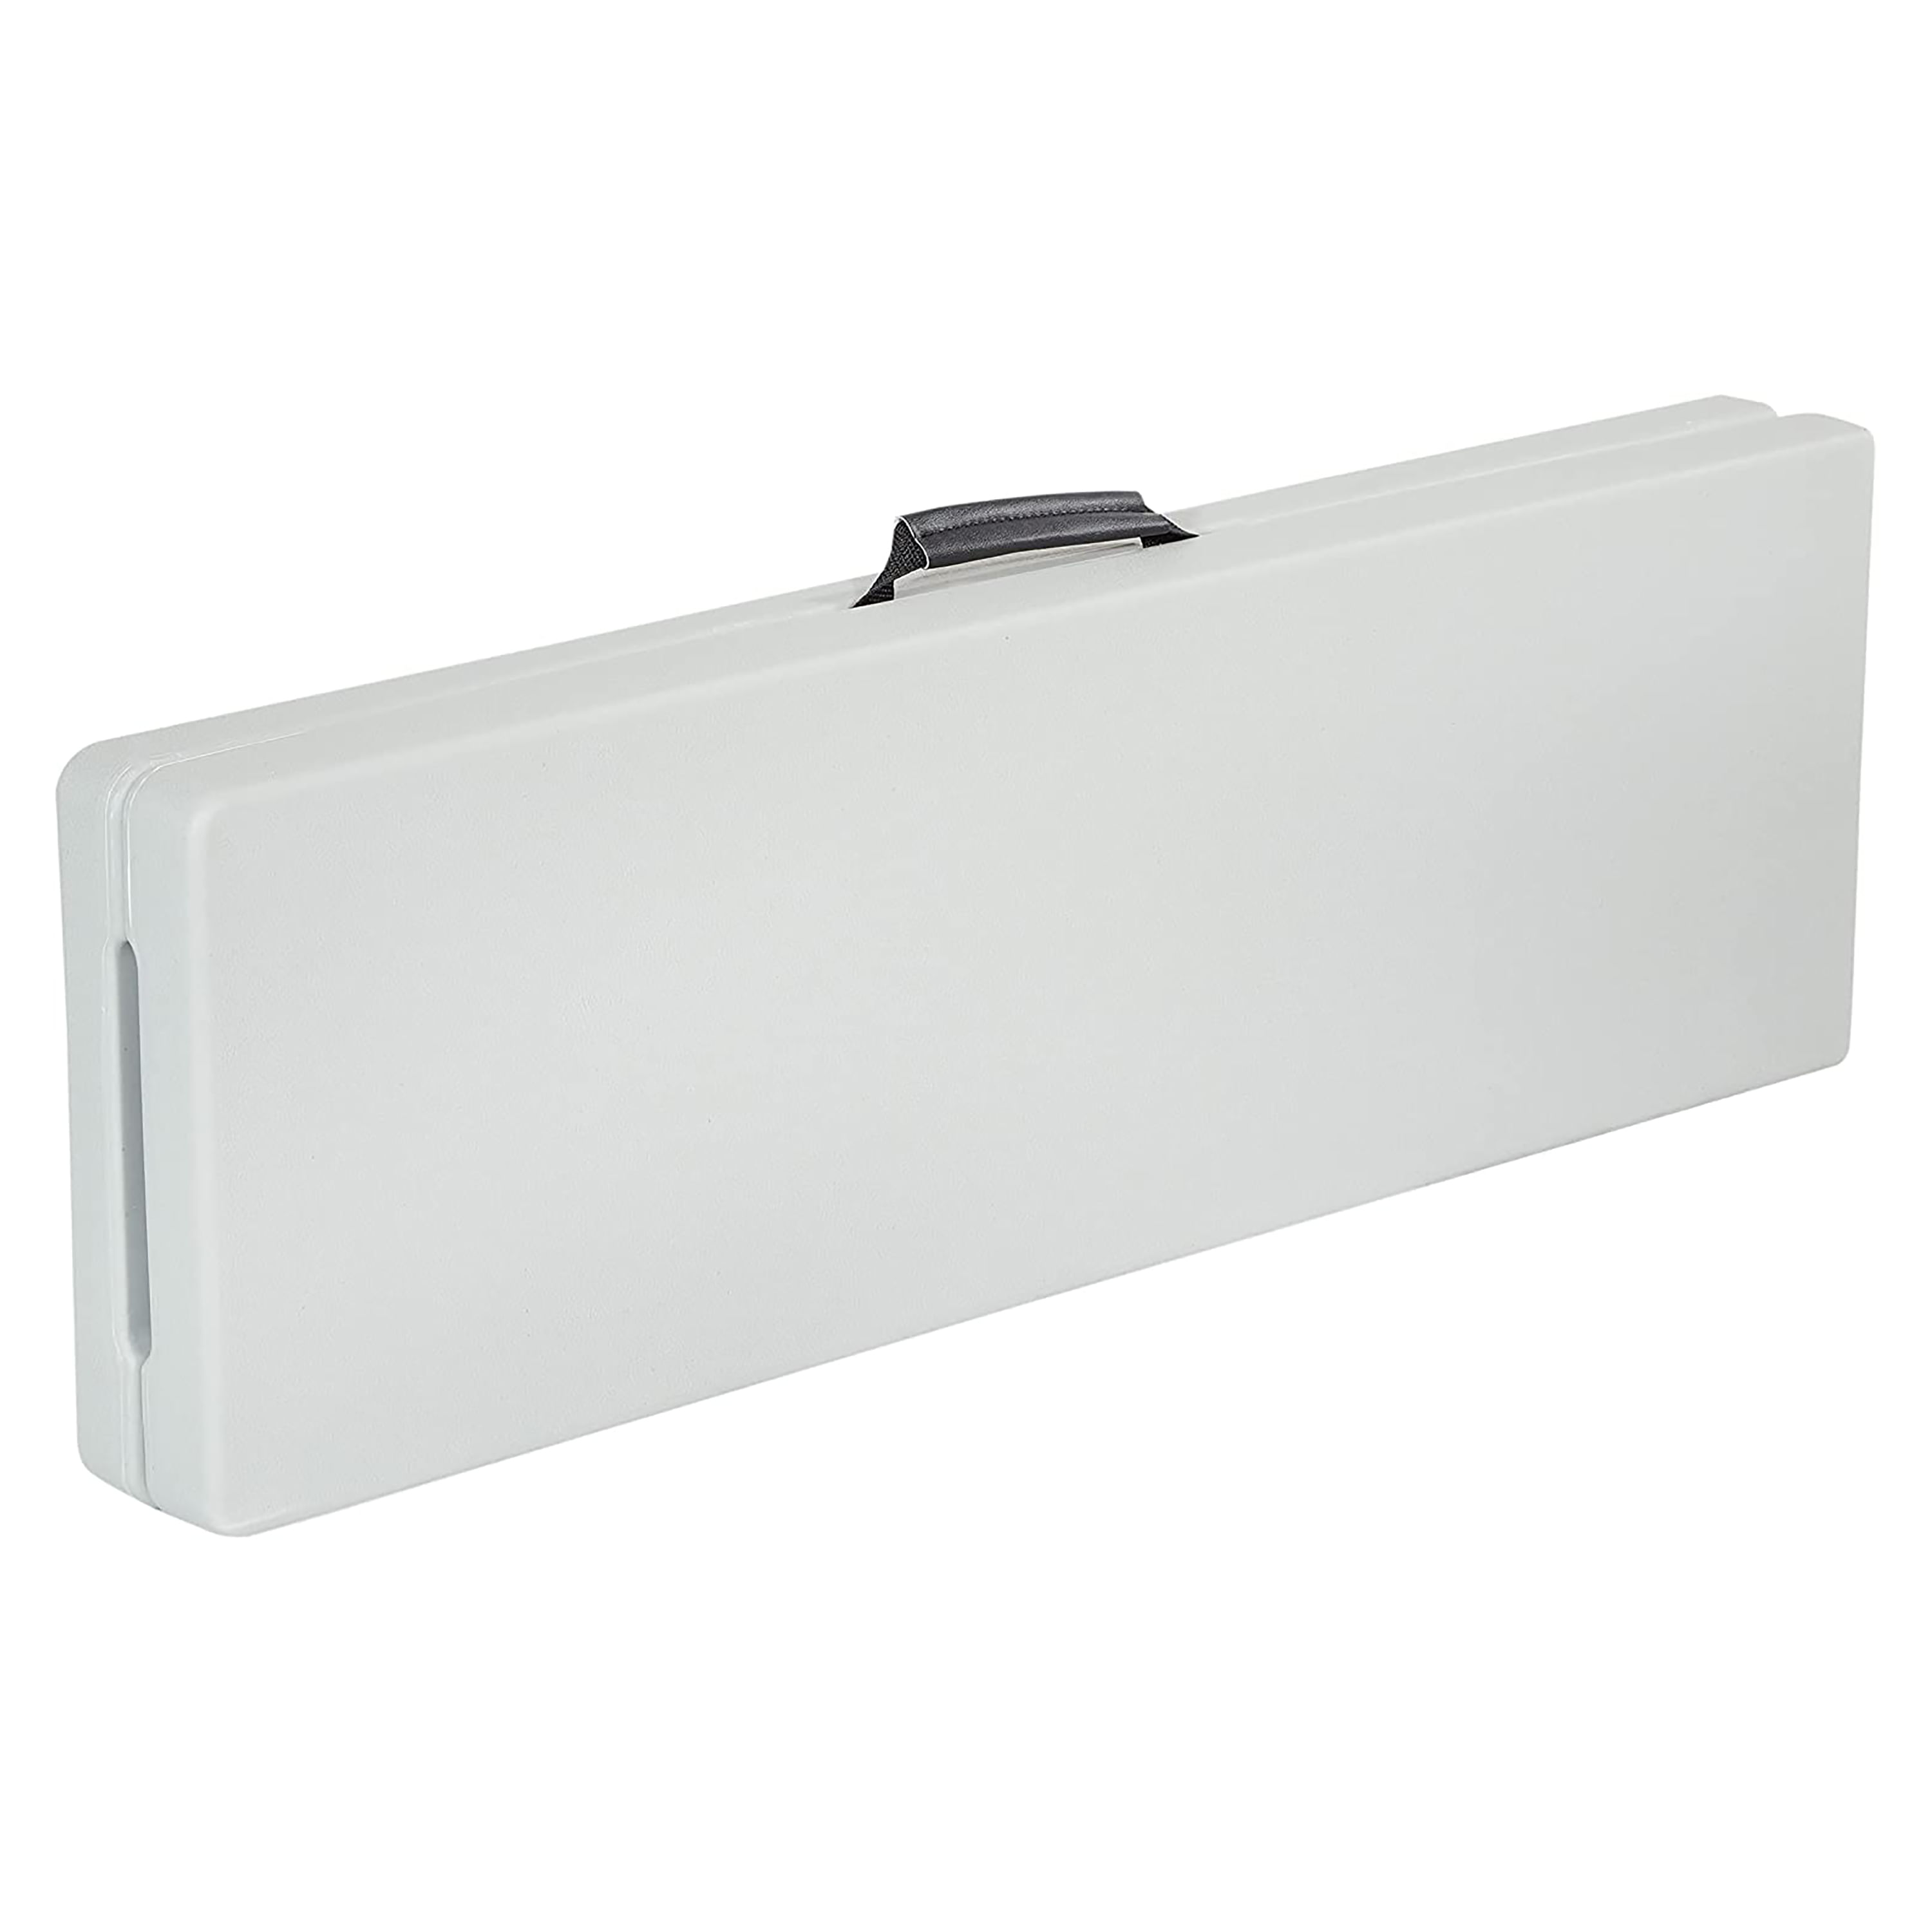 Banco plegable de plástico de 3 pies, resina blanca ligera y portátil con  marco de acero resistente, perfecto para entretener en interiores y